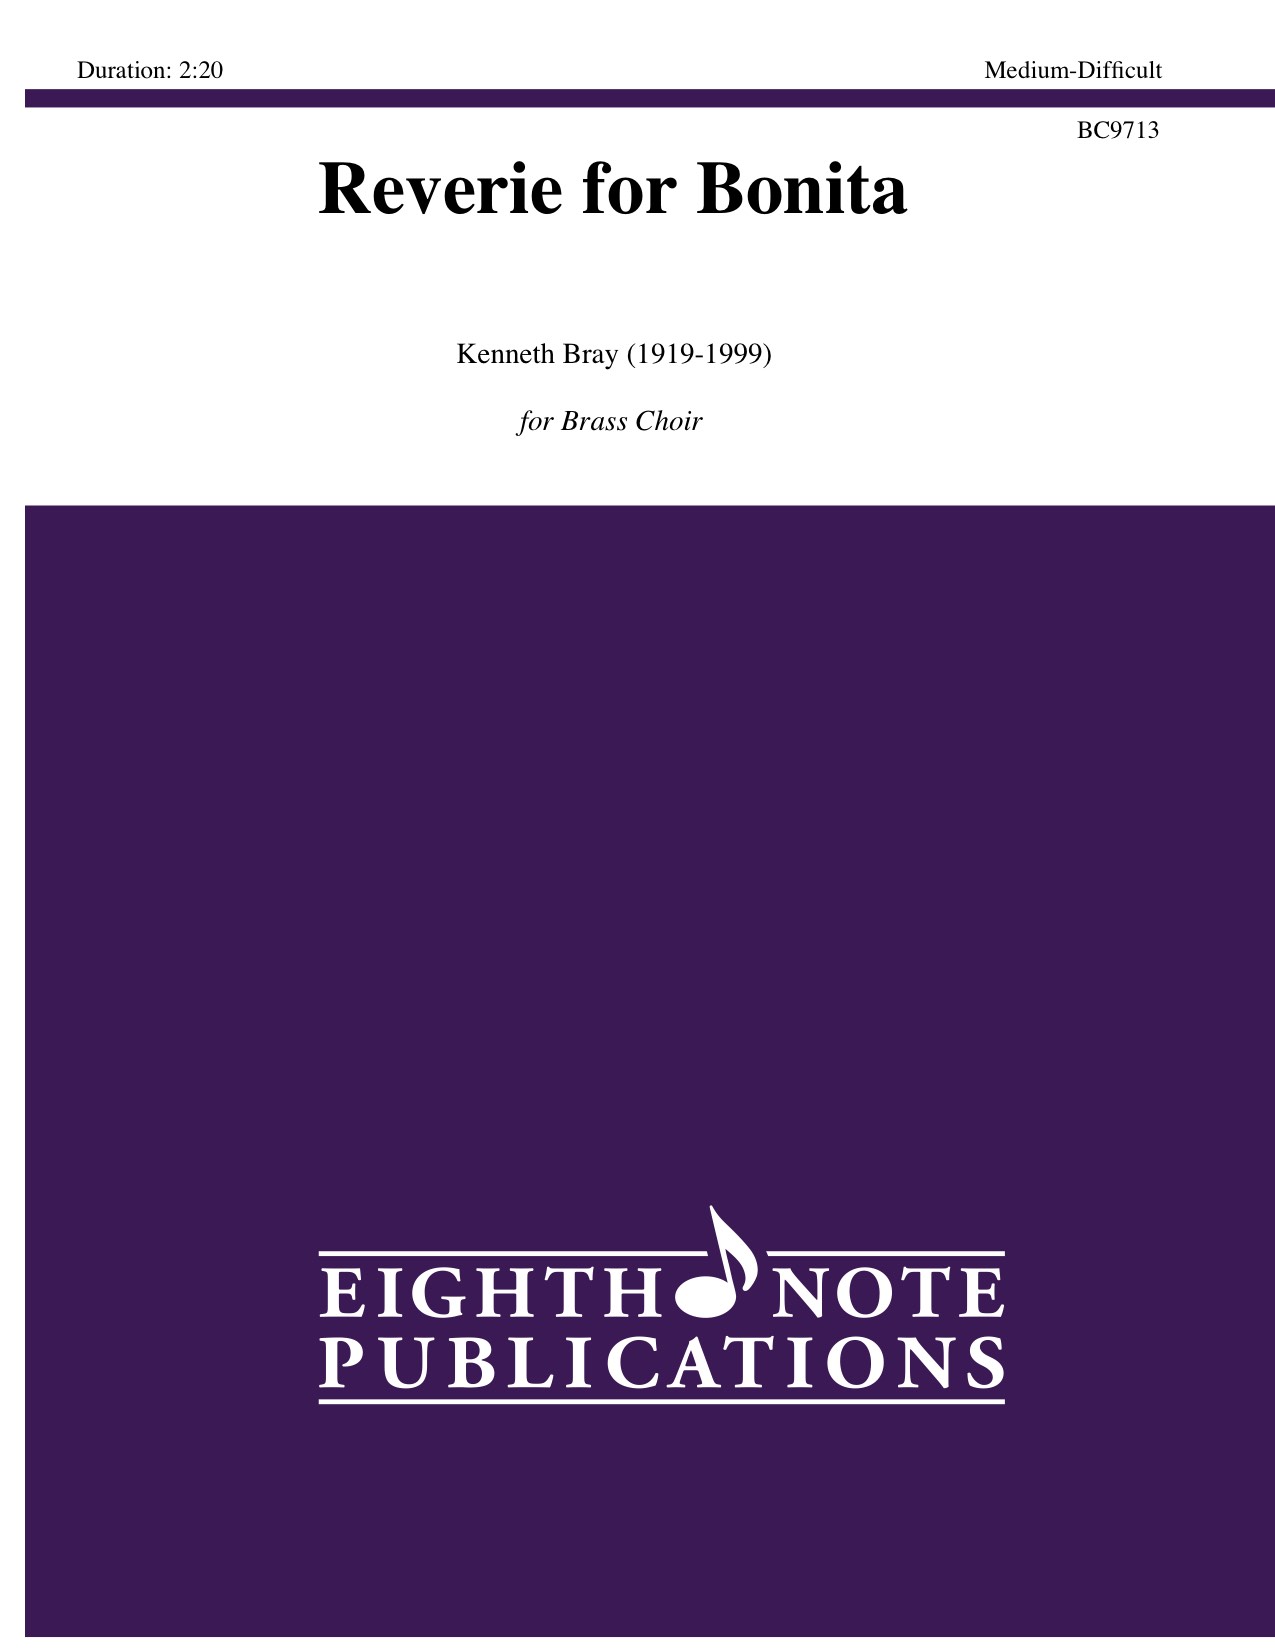 Reverie for Bonita - Kenneth Bray